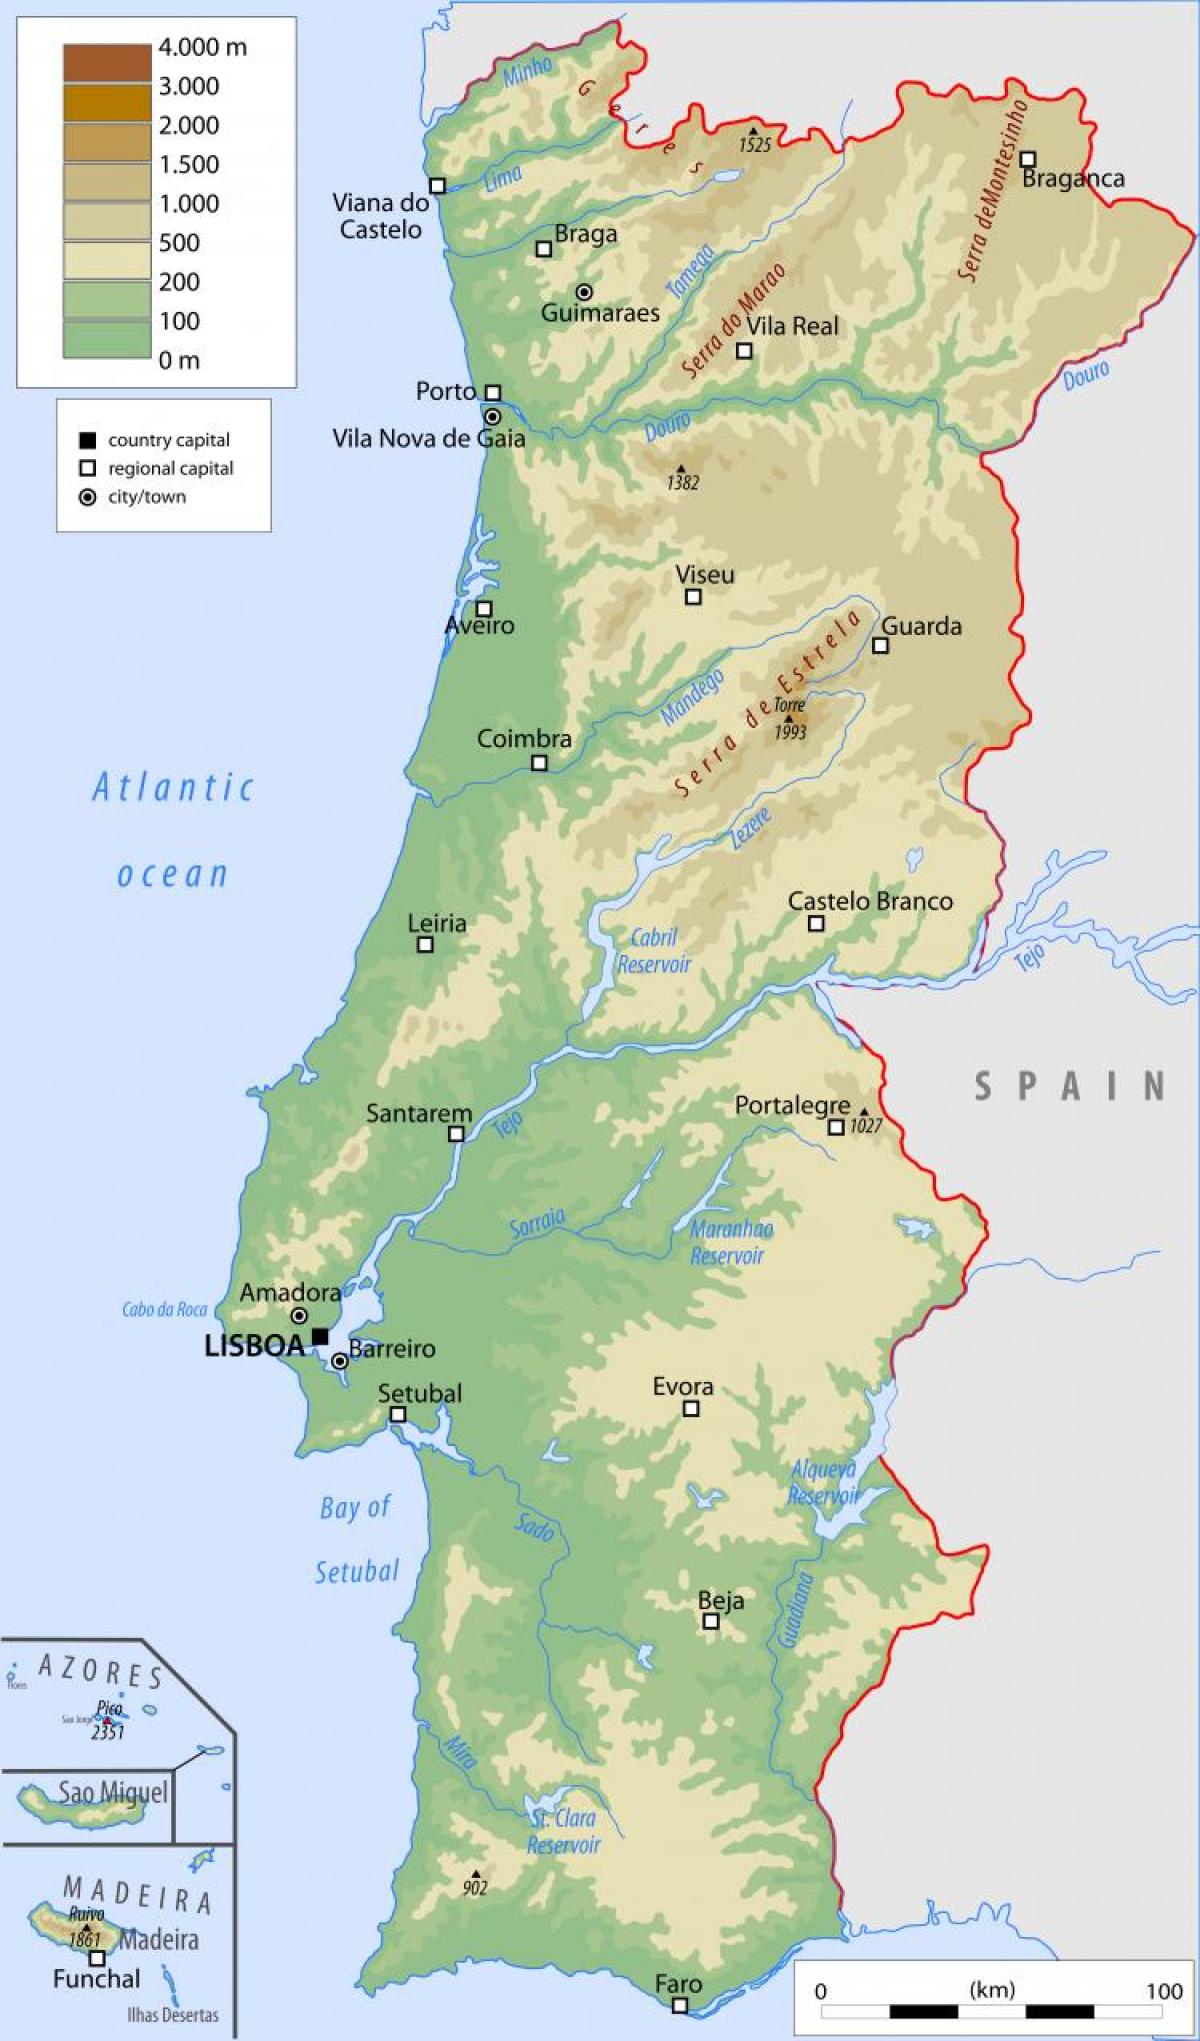 Mappa del Portogallo con le principali città